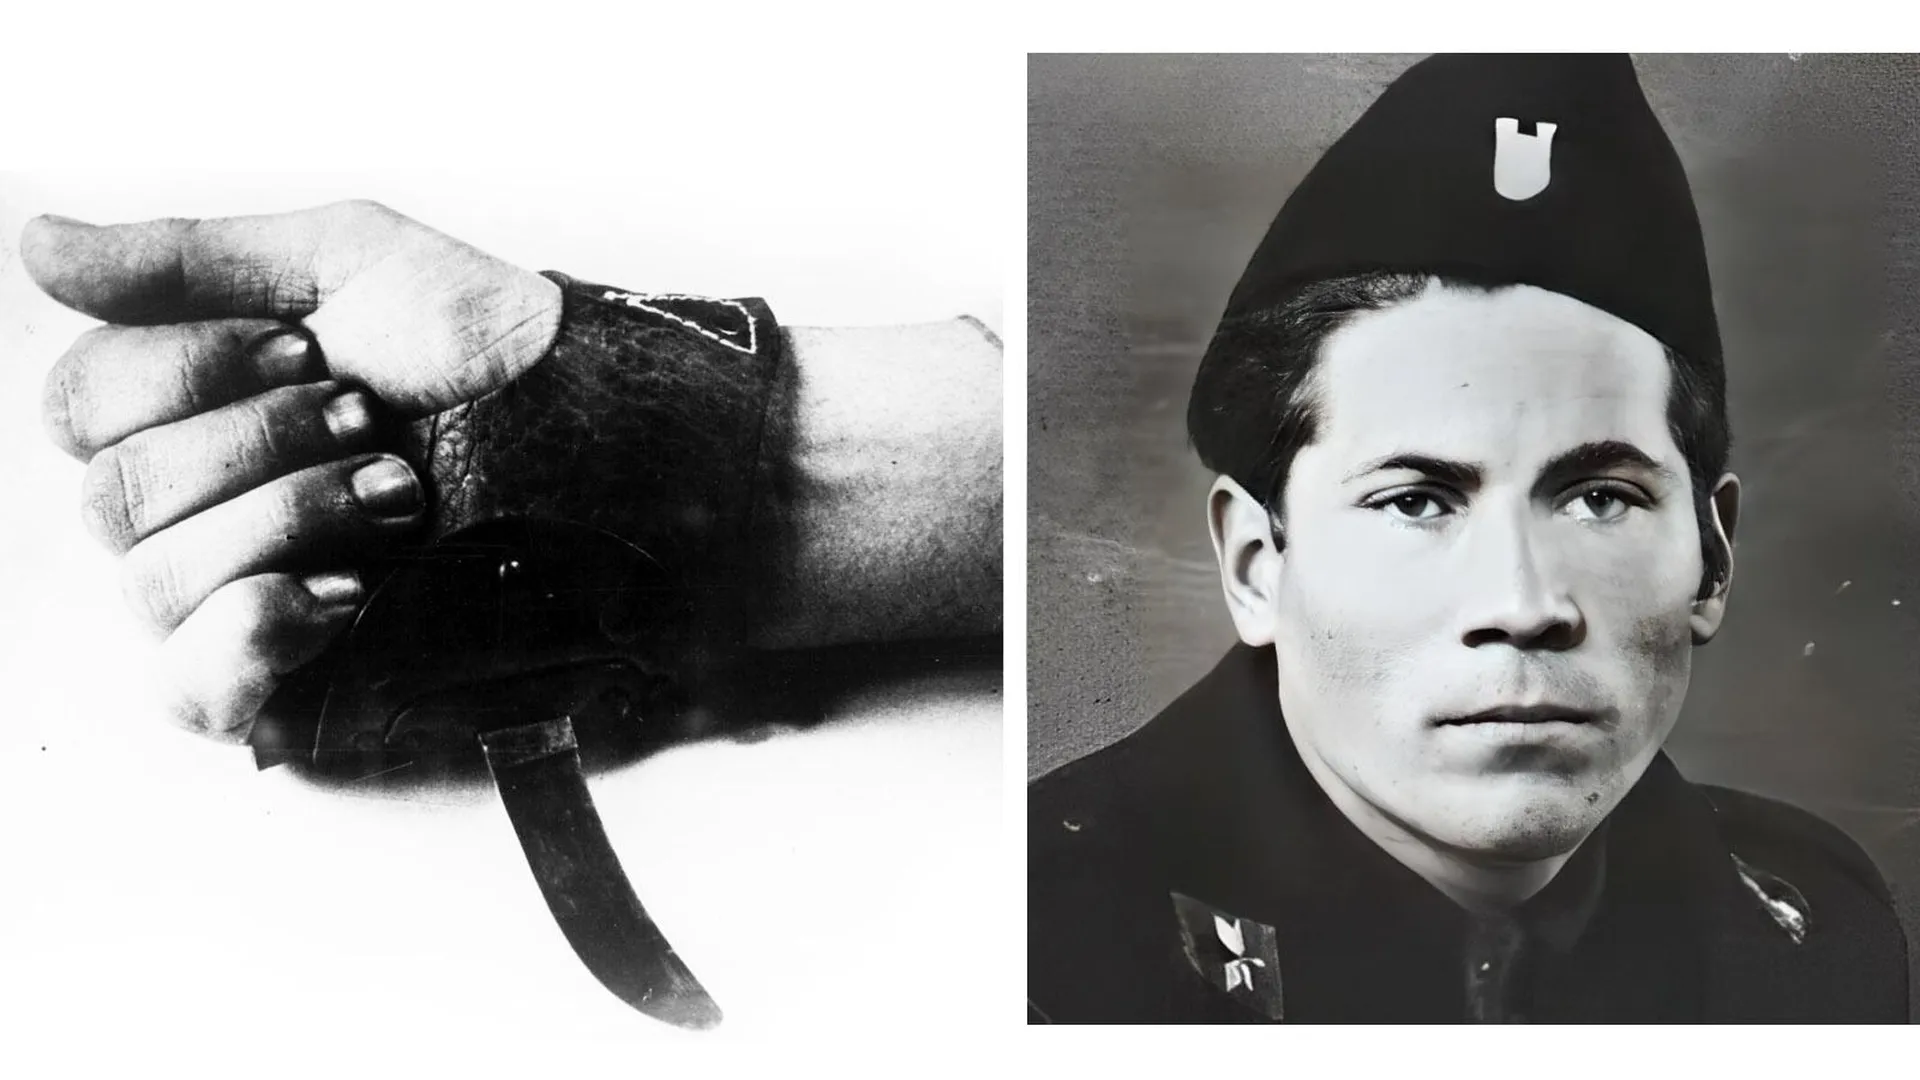 Специальный нож на кожаной рукавице для резни заключенных концлагерей; Петар Брзица по прозвищу Король Серборез